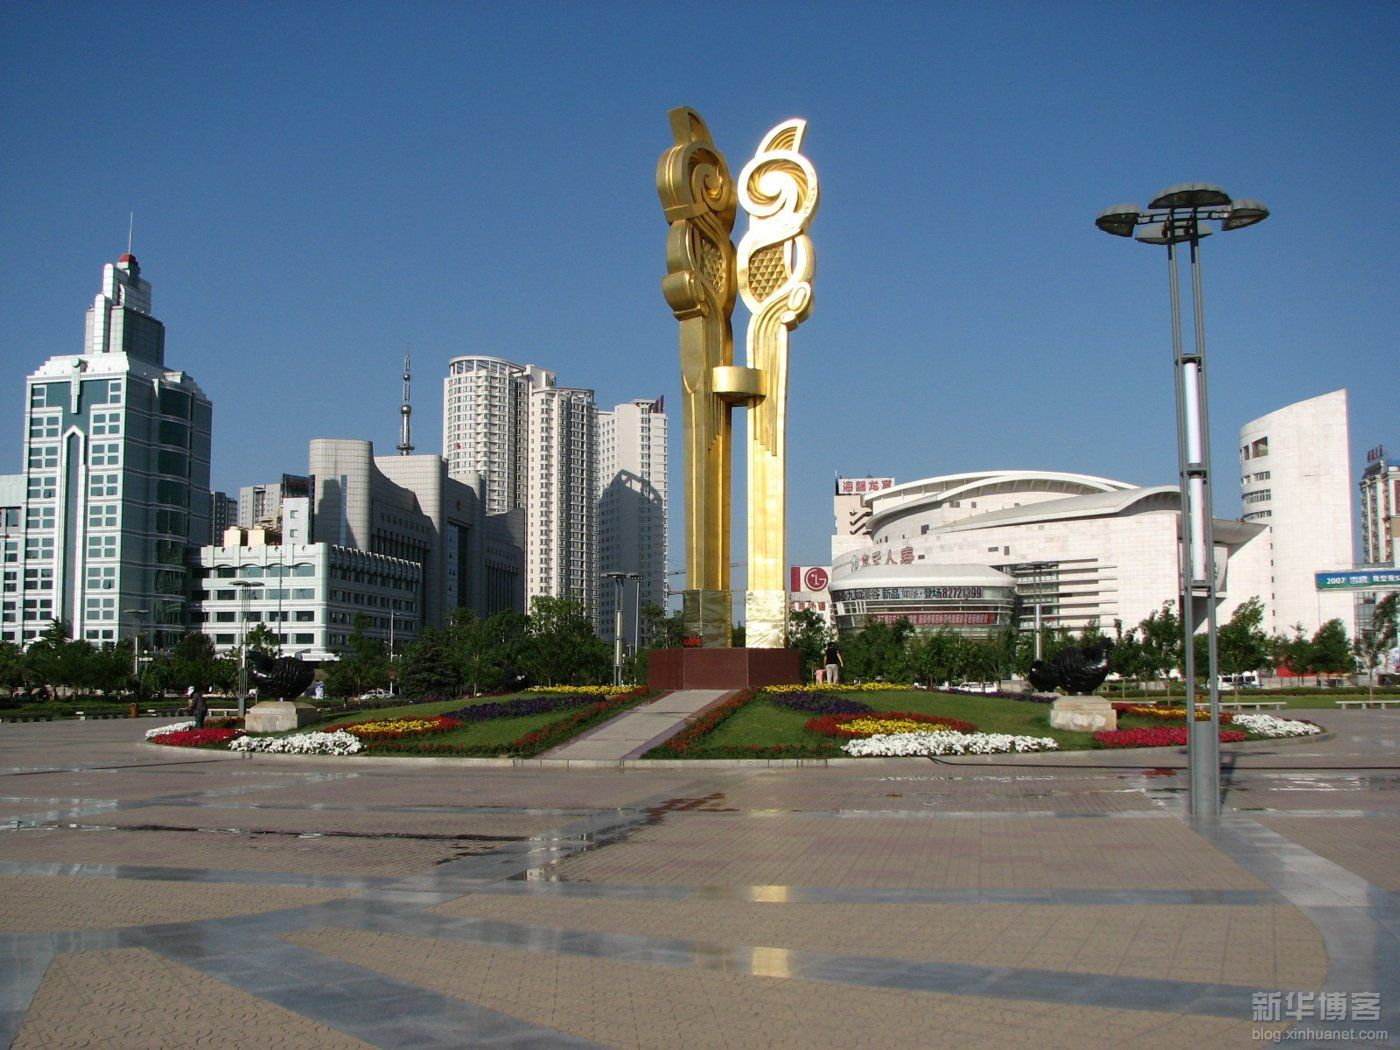 沈阳市府广场太阳鸟雕塑,现已暂时搬迁